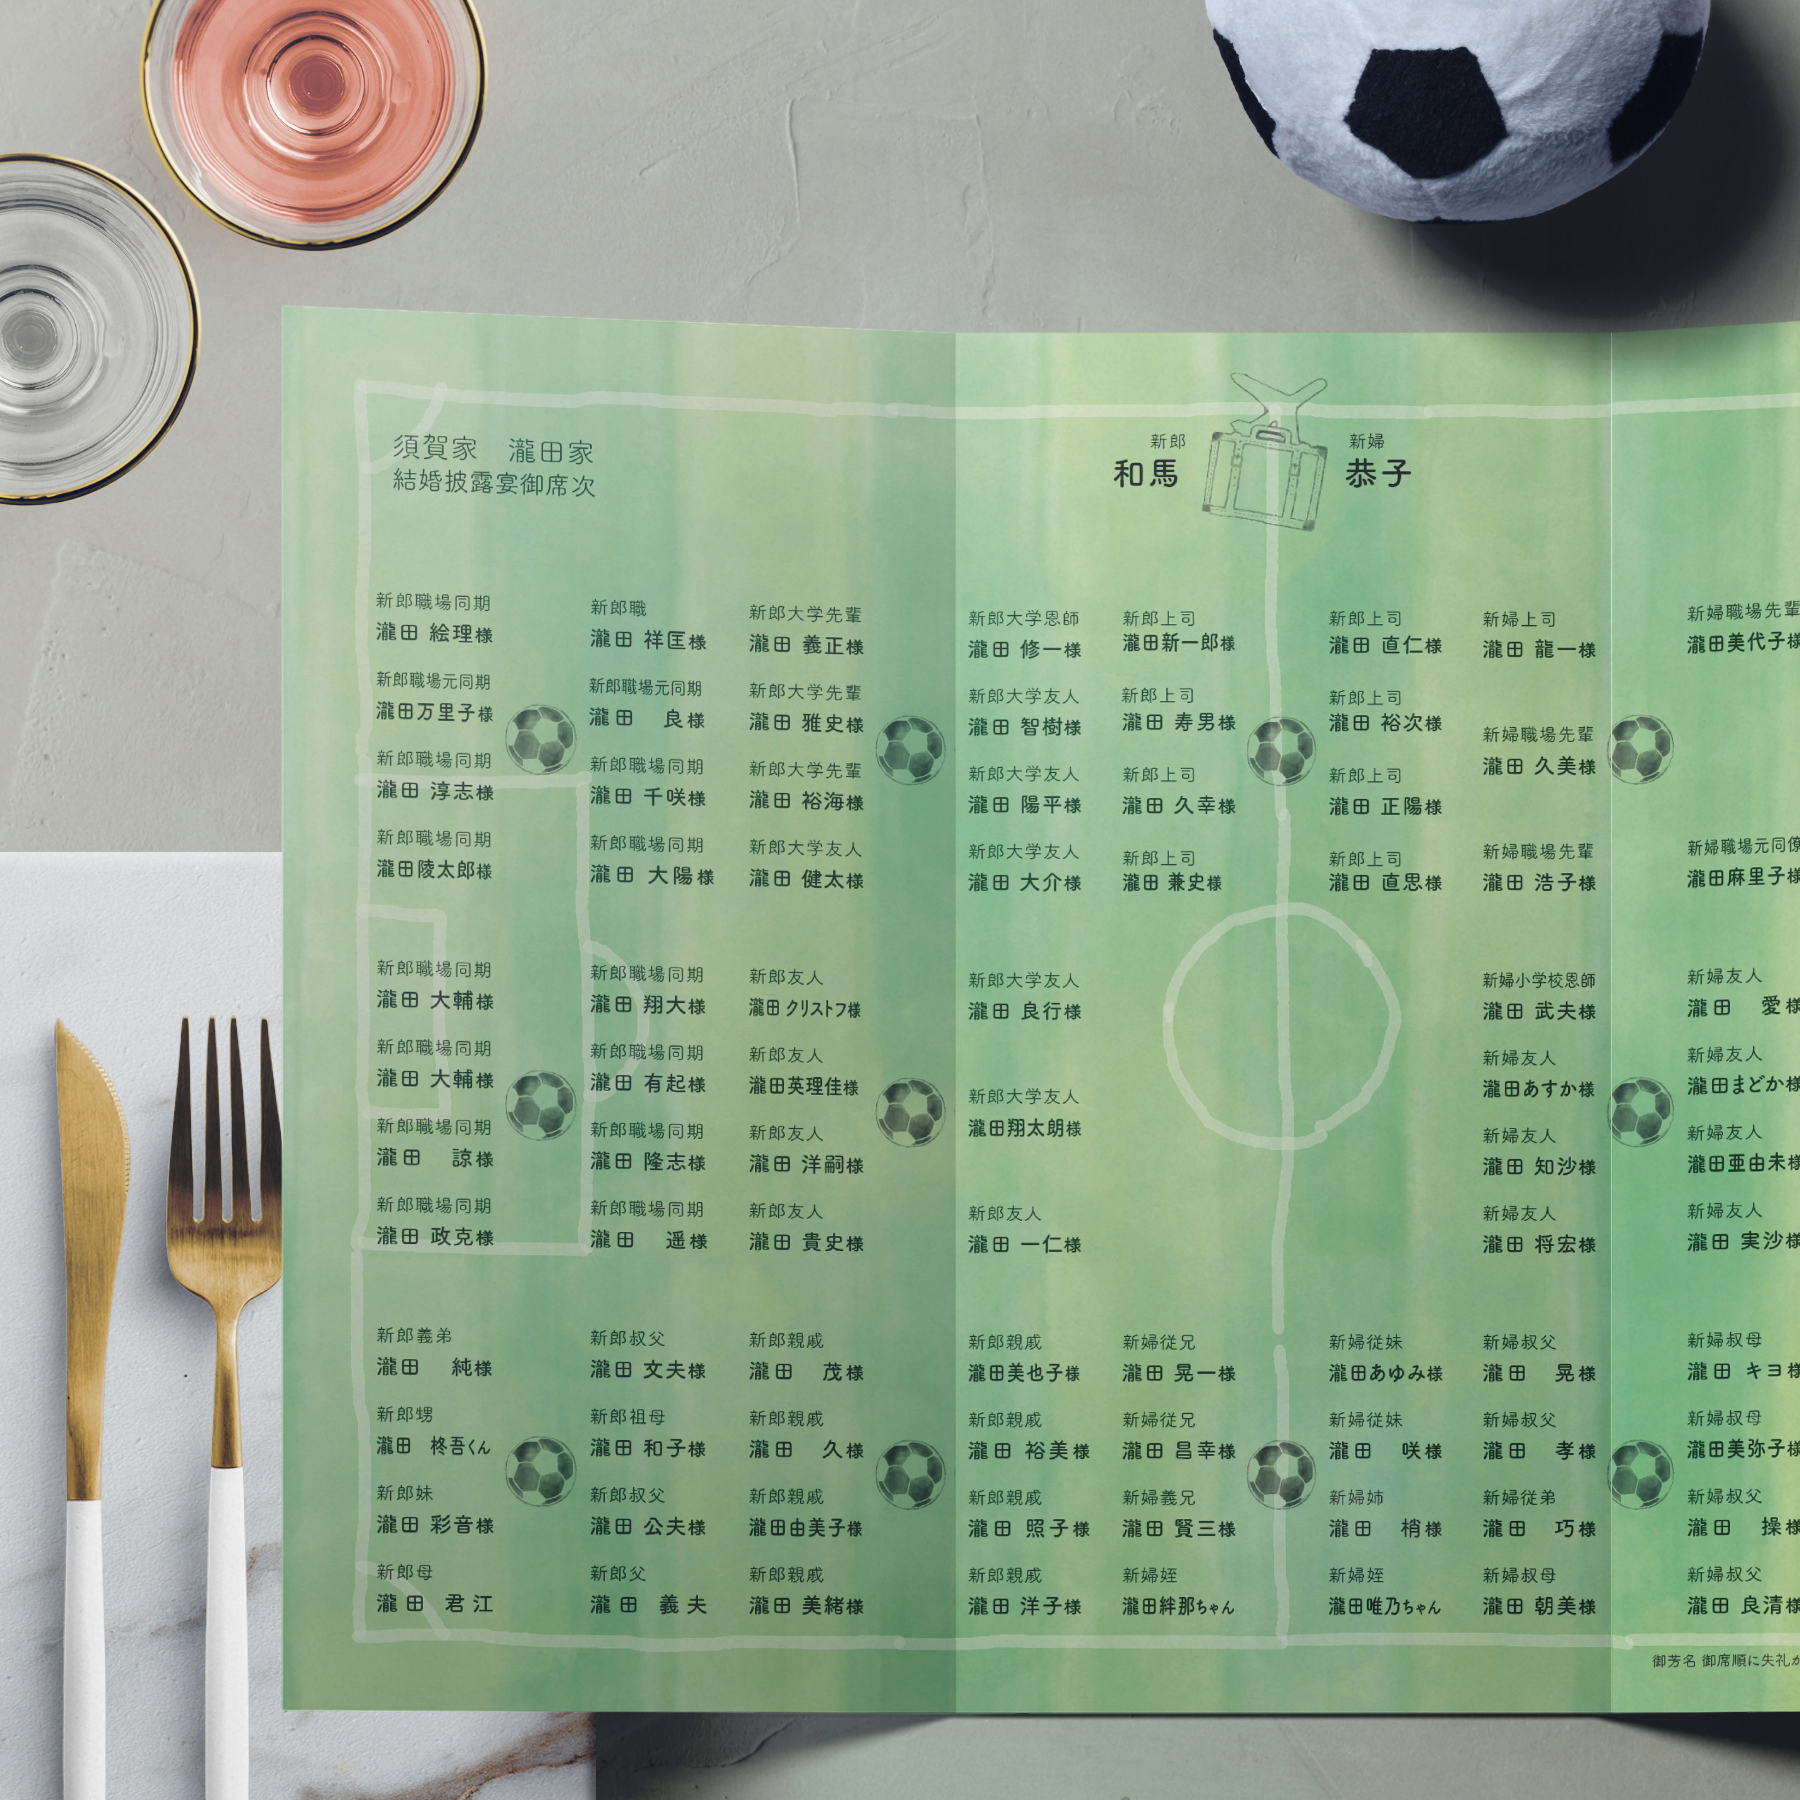 サッカーがテーマのチケット型招待状／3つ折りプロフィールパンフレット